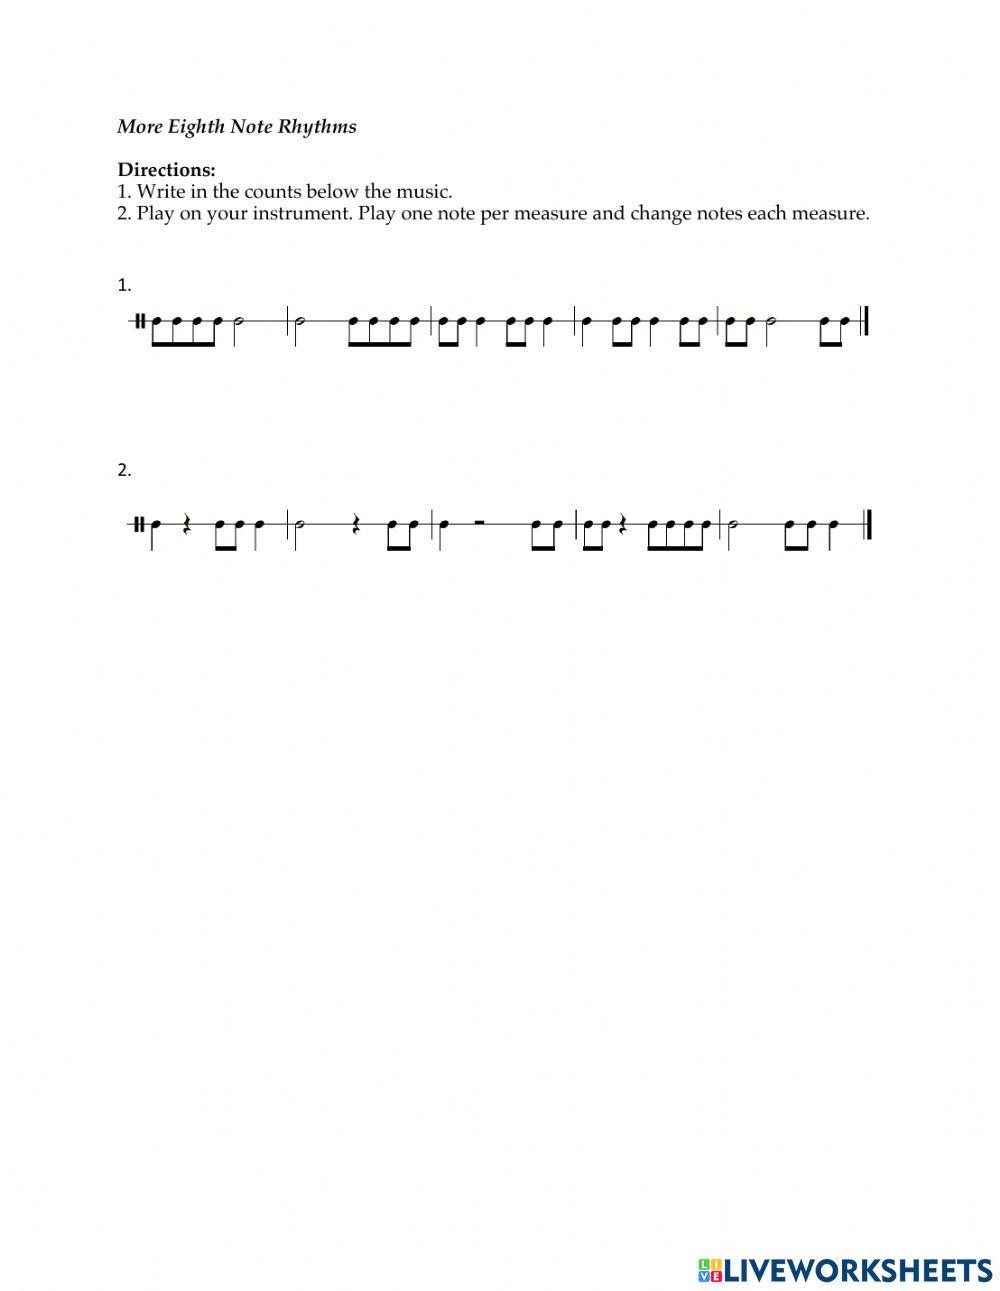 More Eighth Notes Rhythms